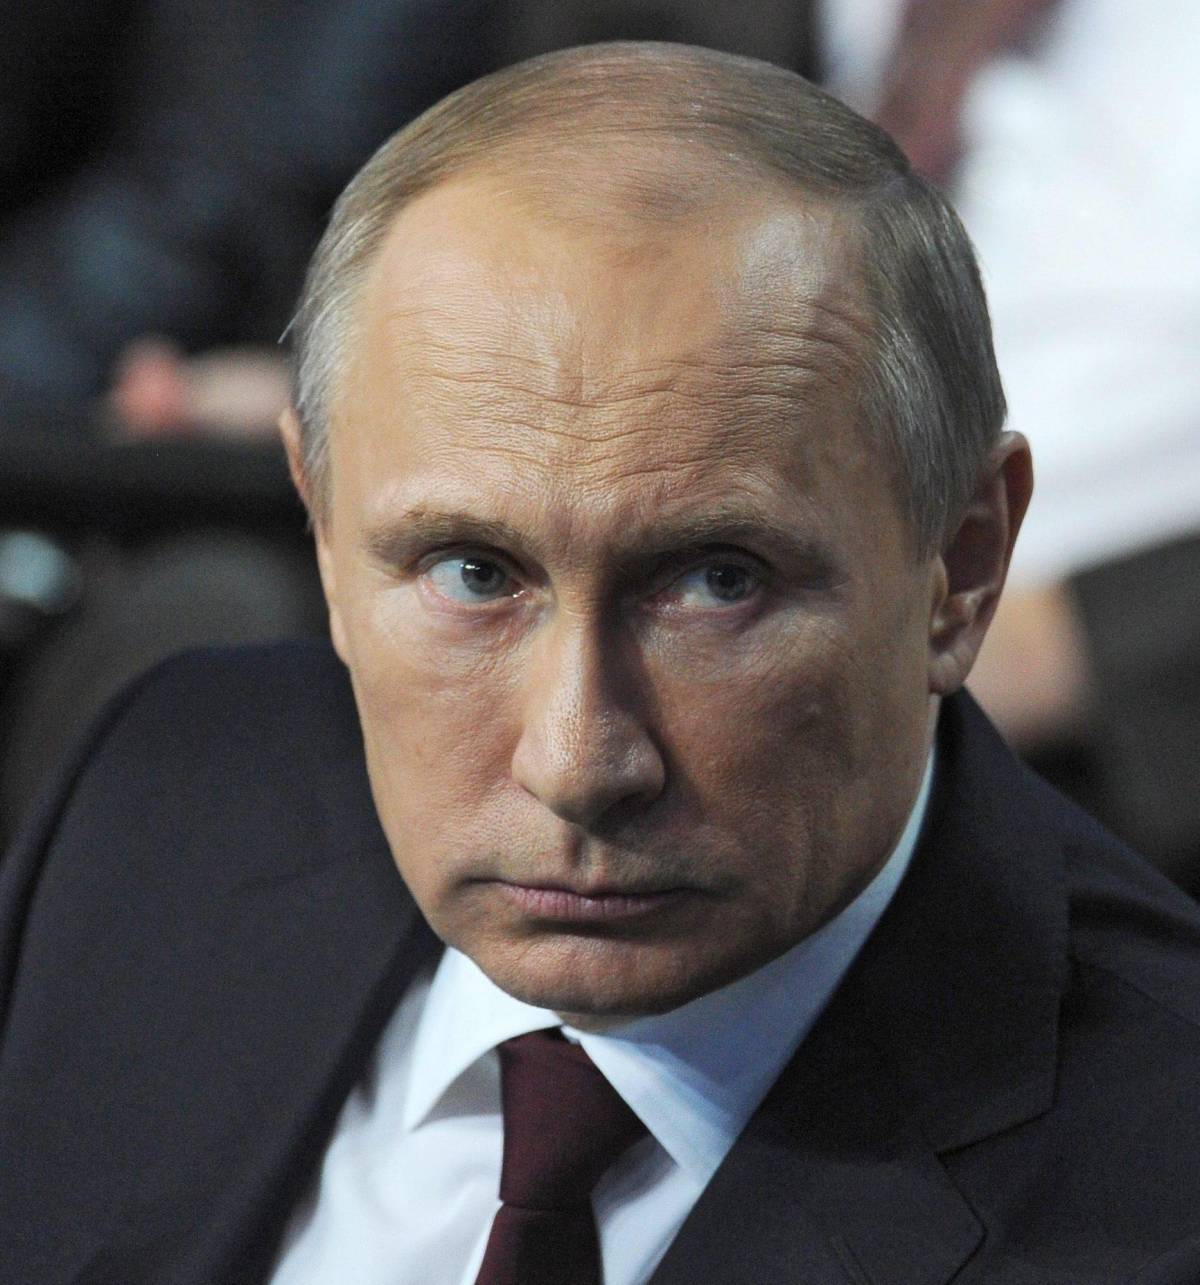 "Pronte sanzioni più dure per Mosca"